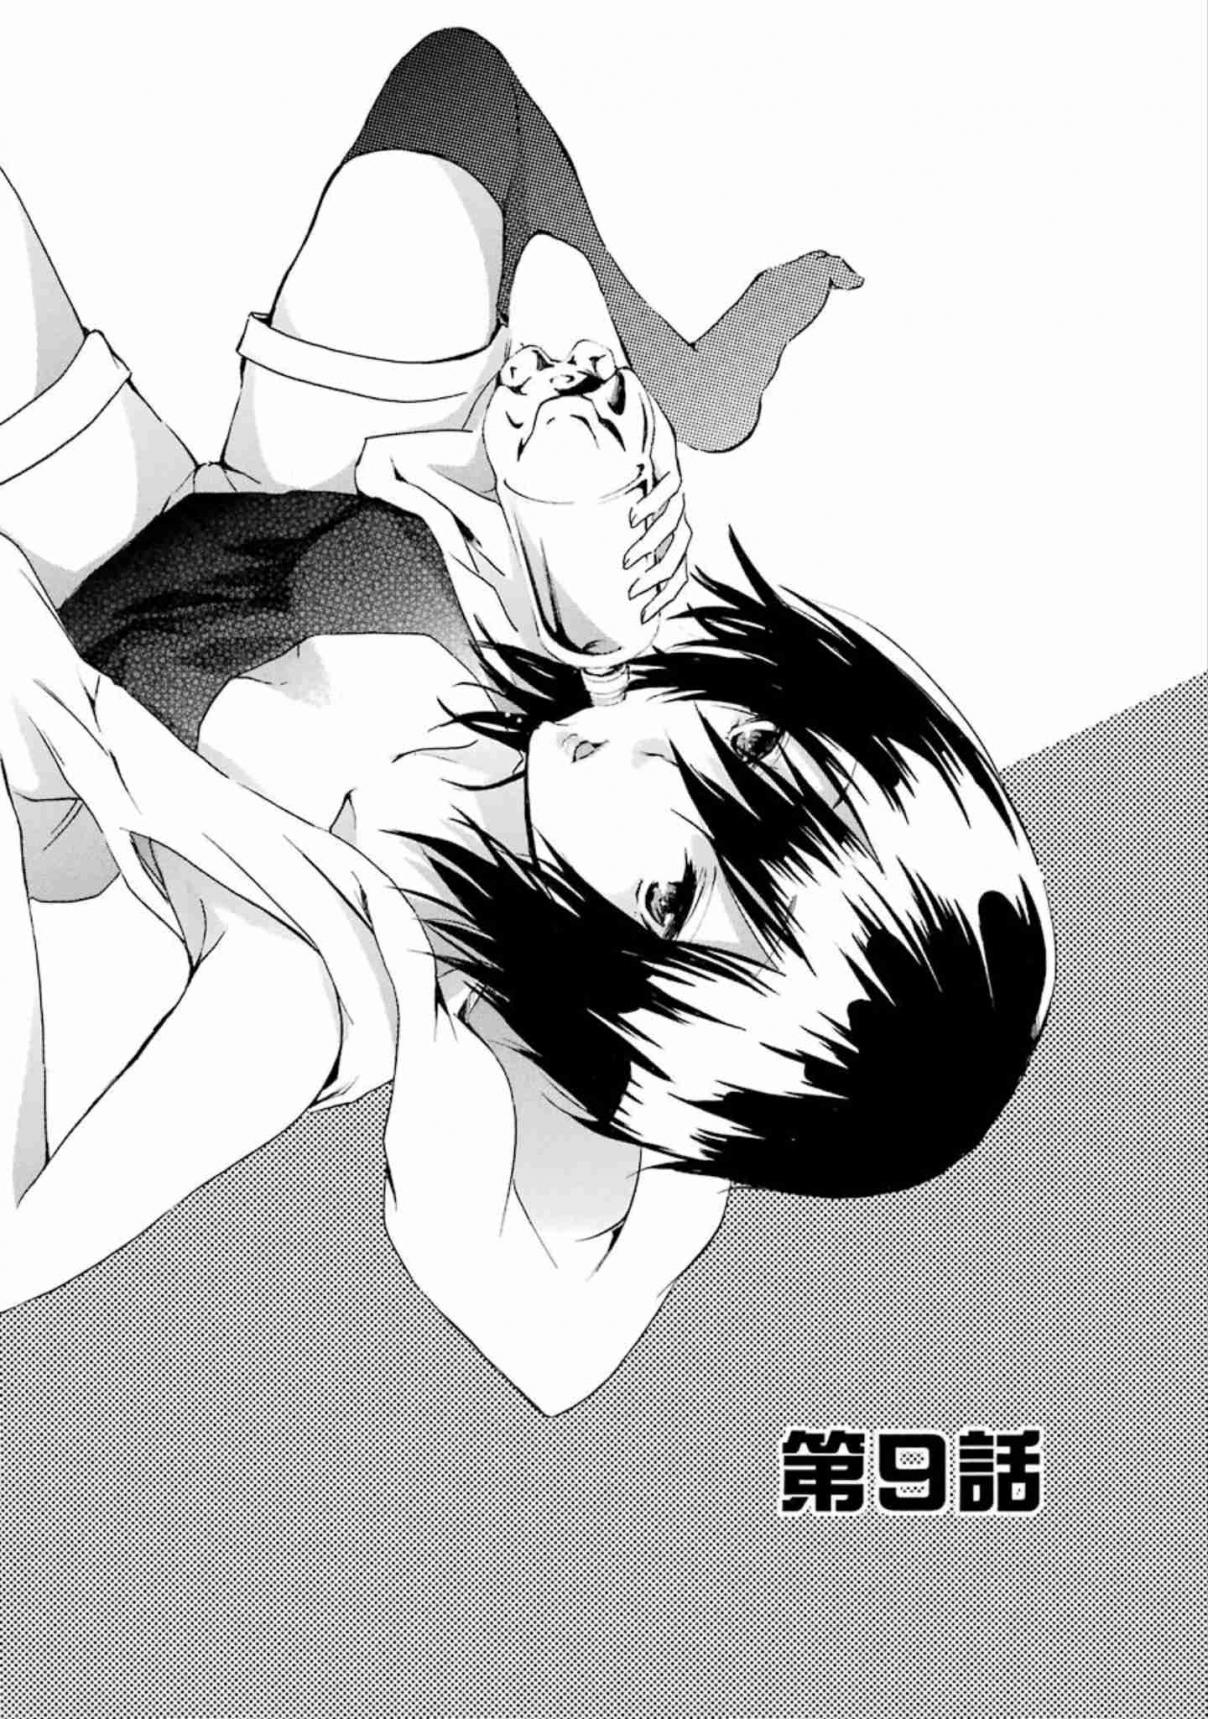 Shonen Shoujo 18 kin Vol. 1 Ch. 9